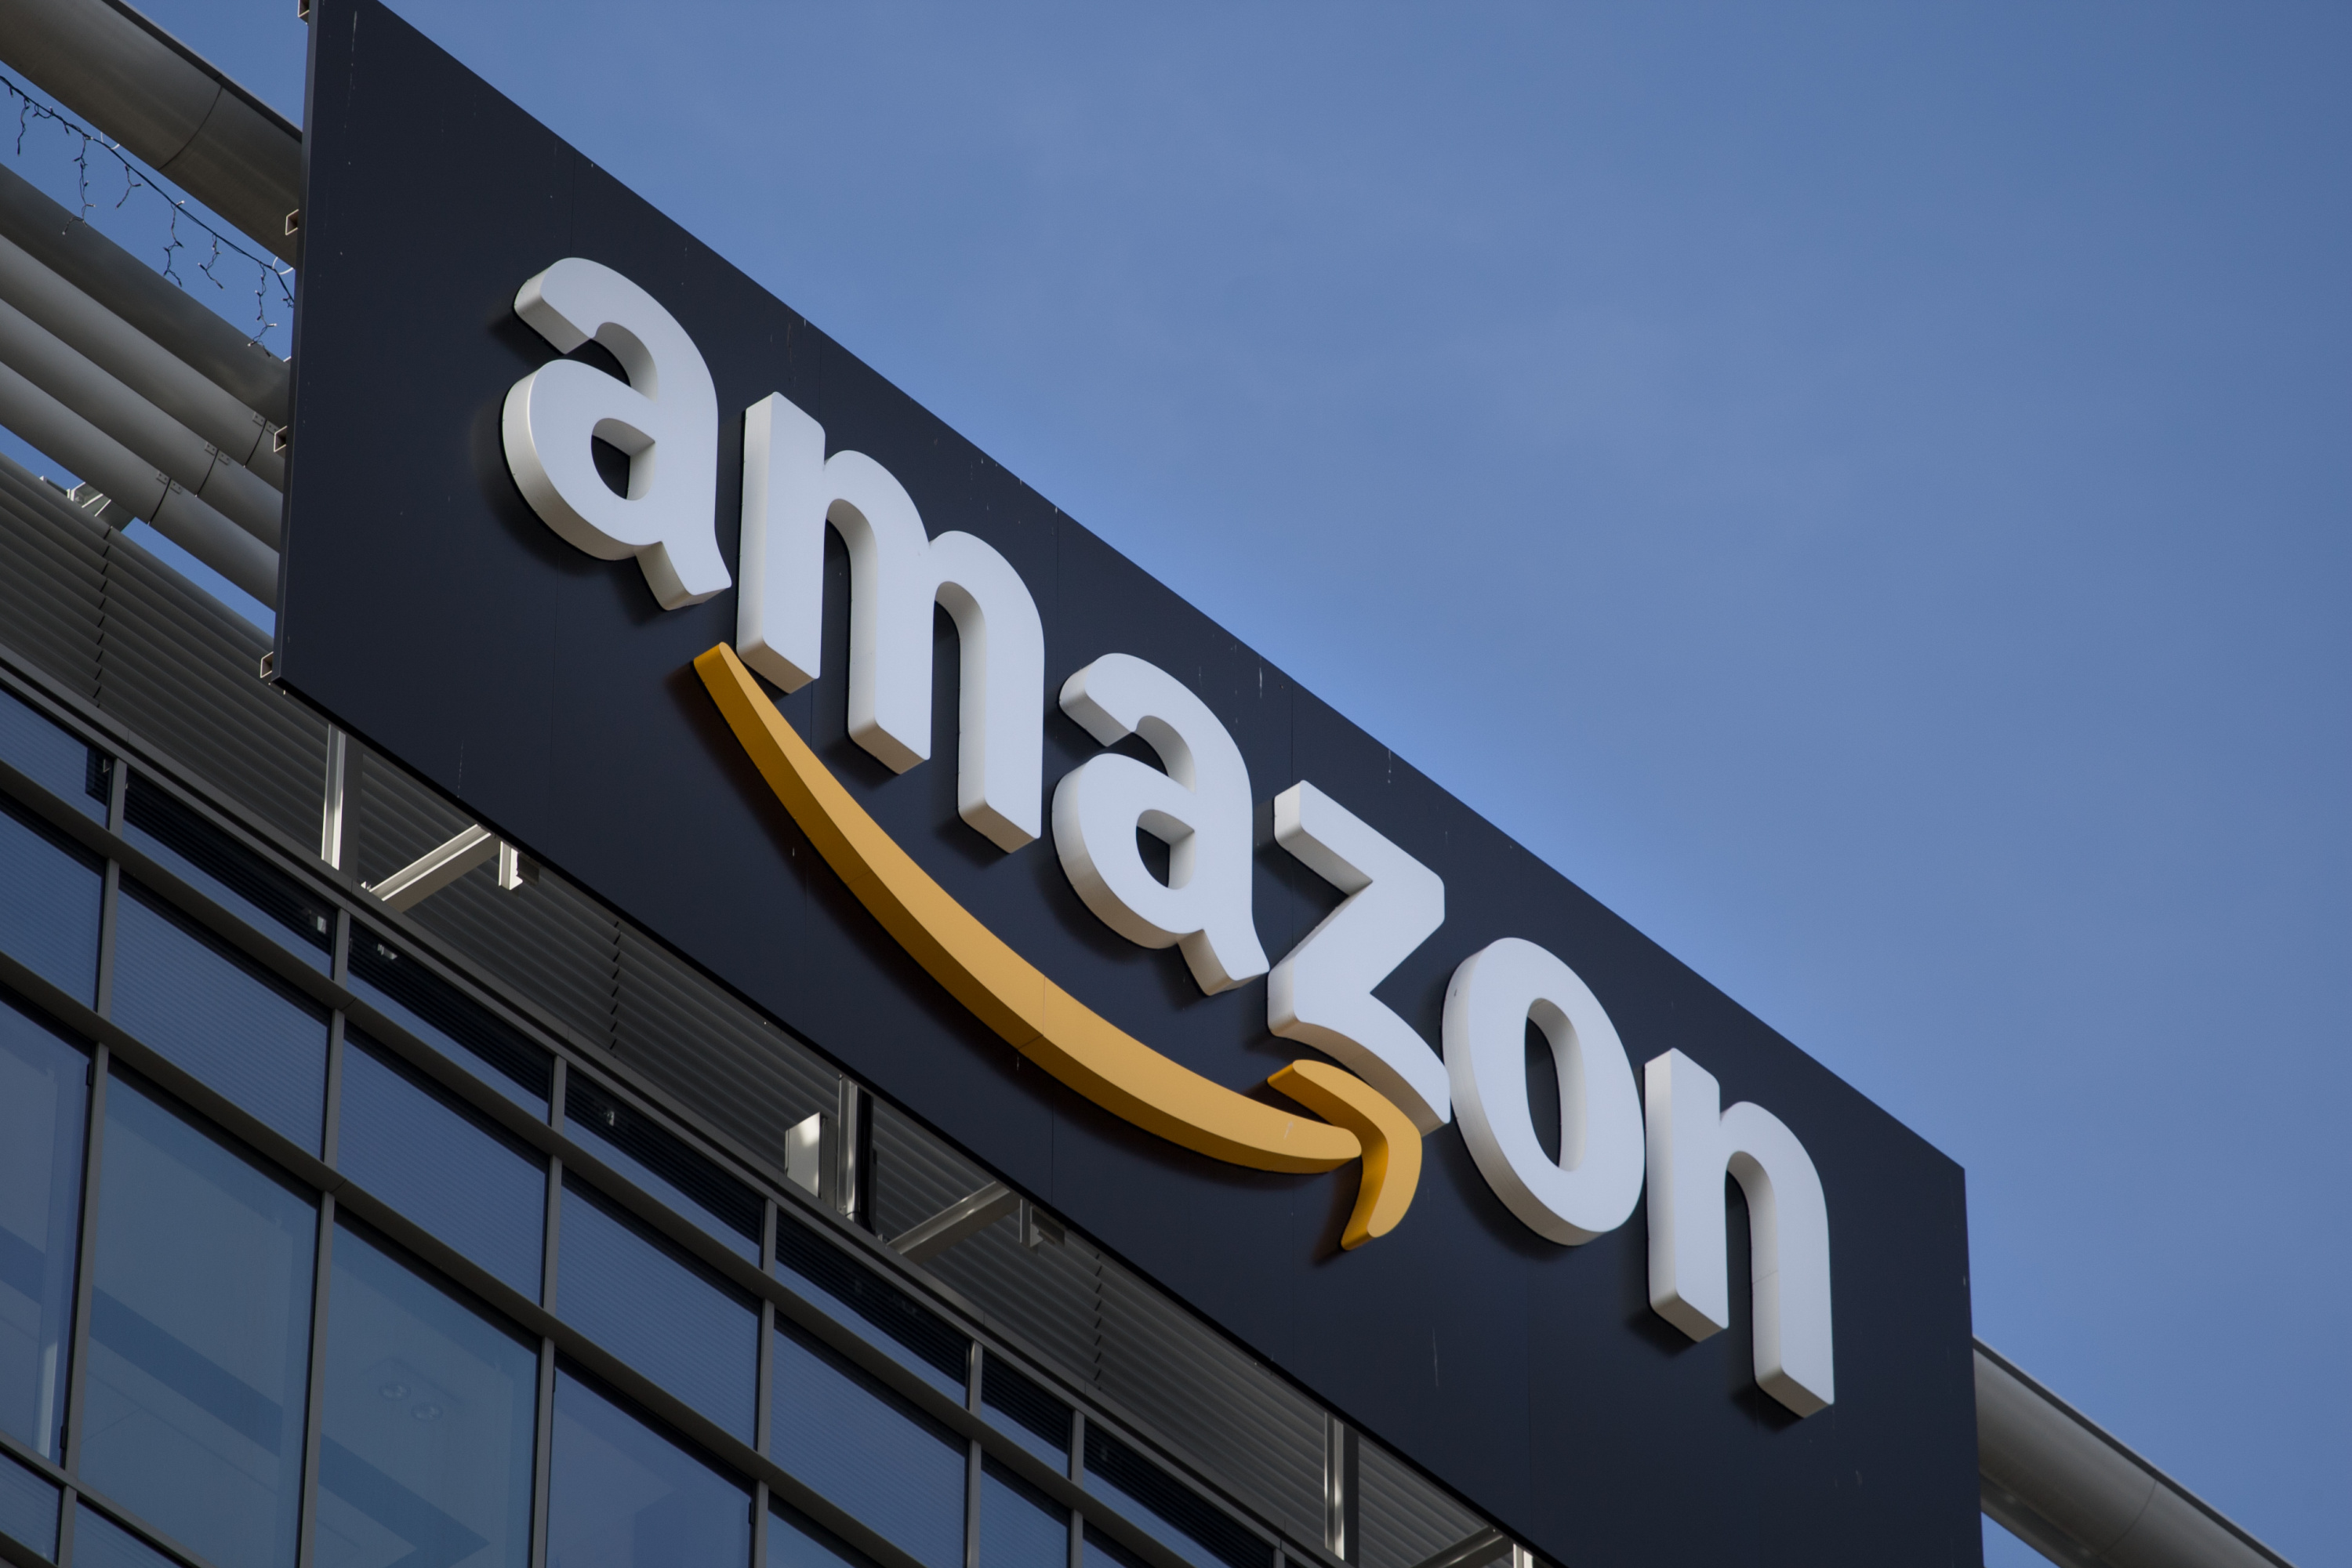 Amazon vs Alibaba: Battle of the Online Giants